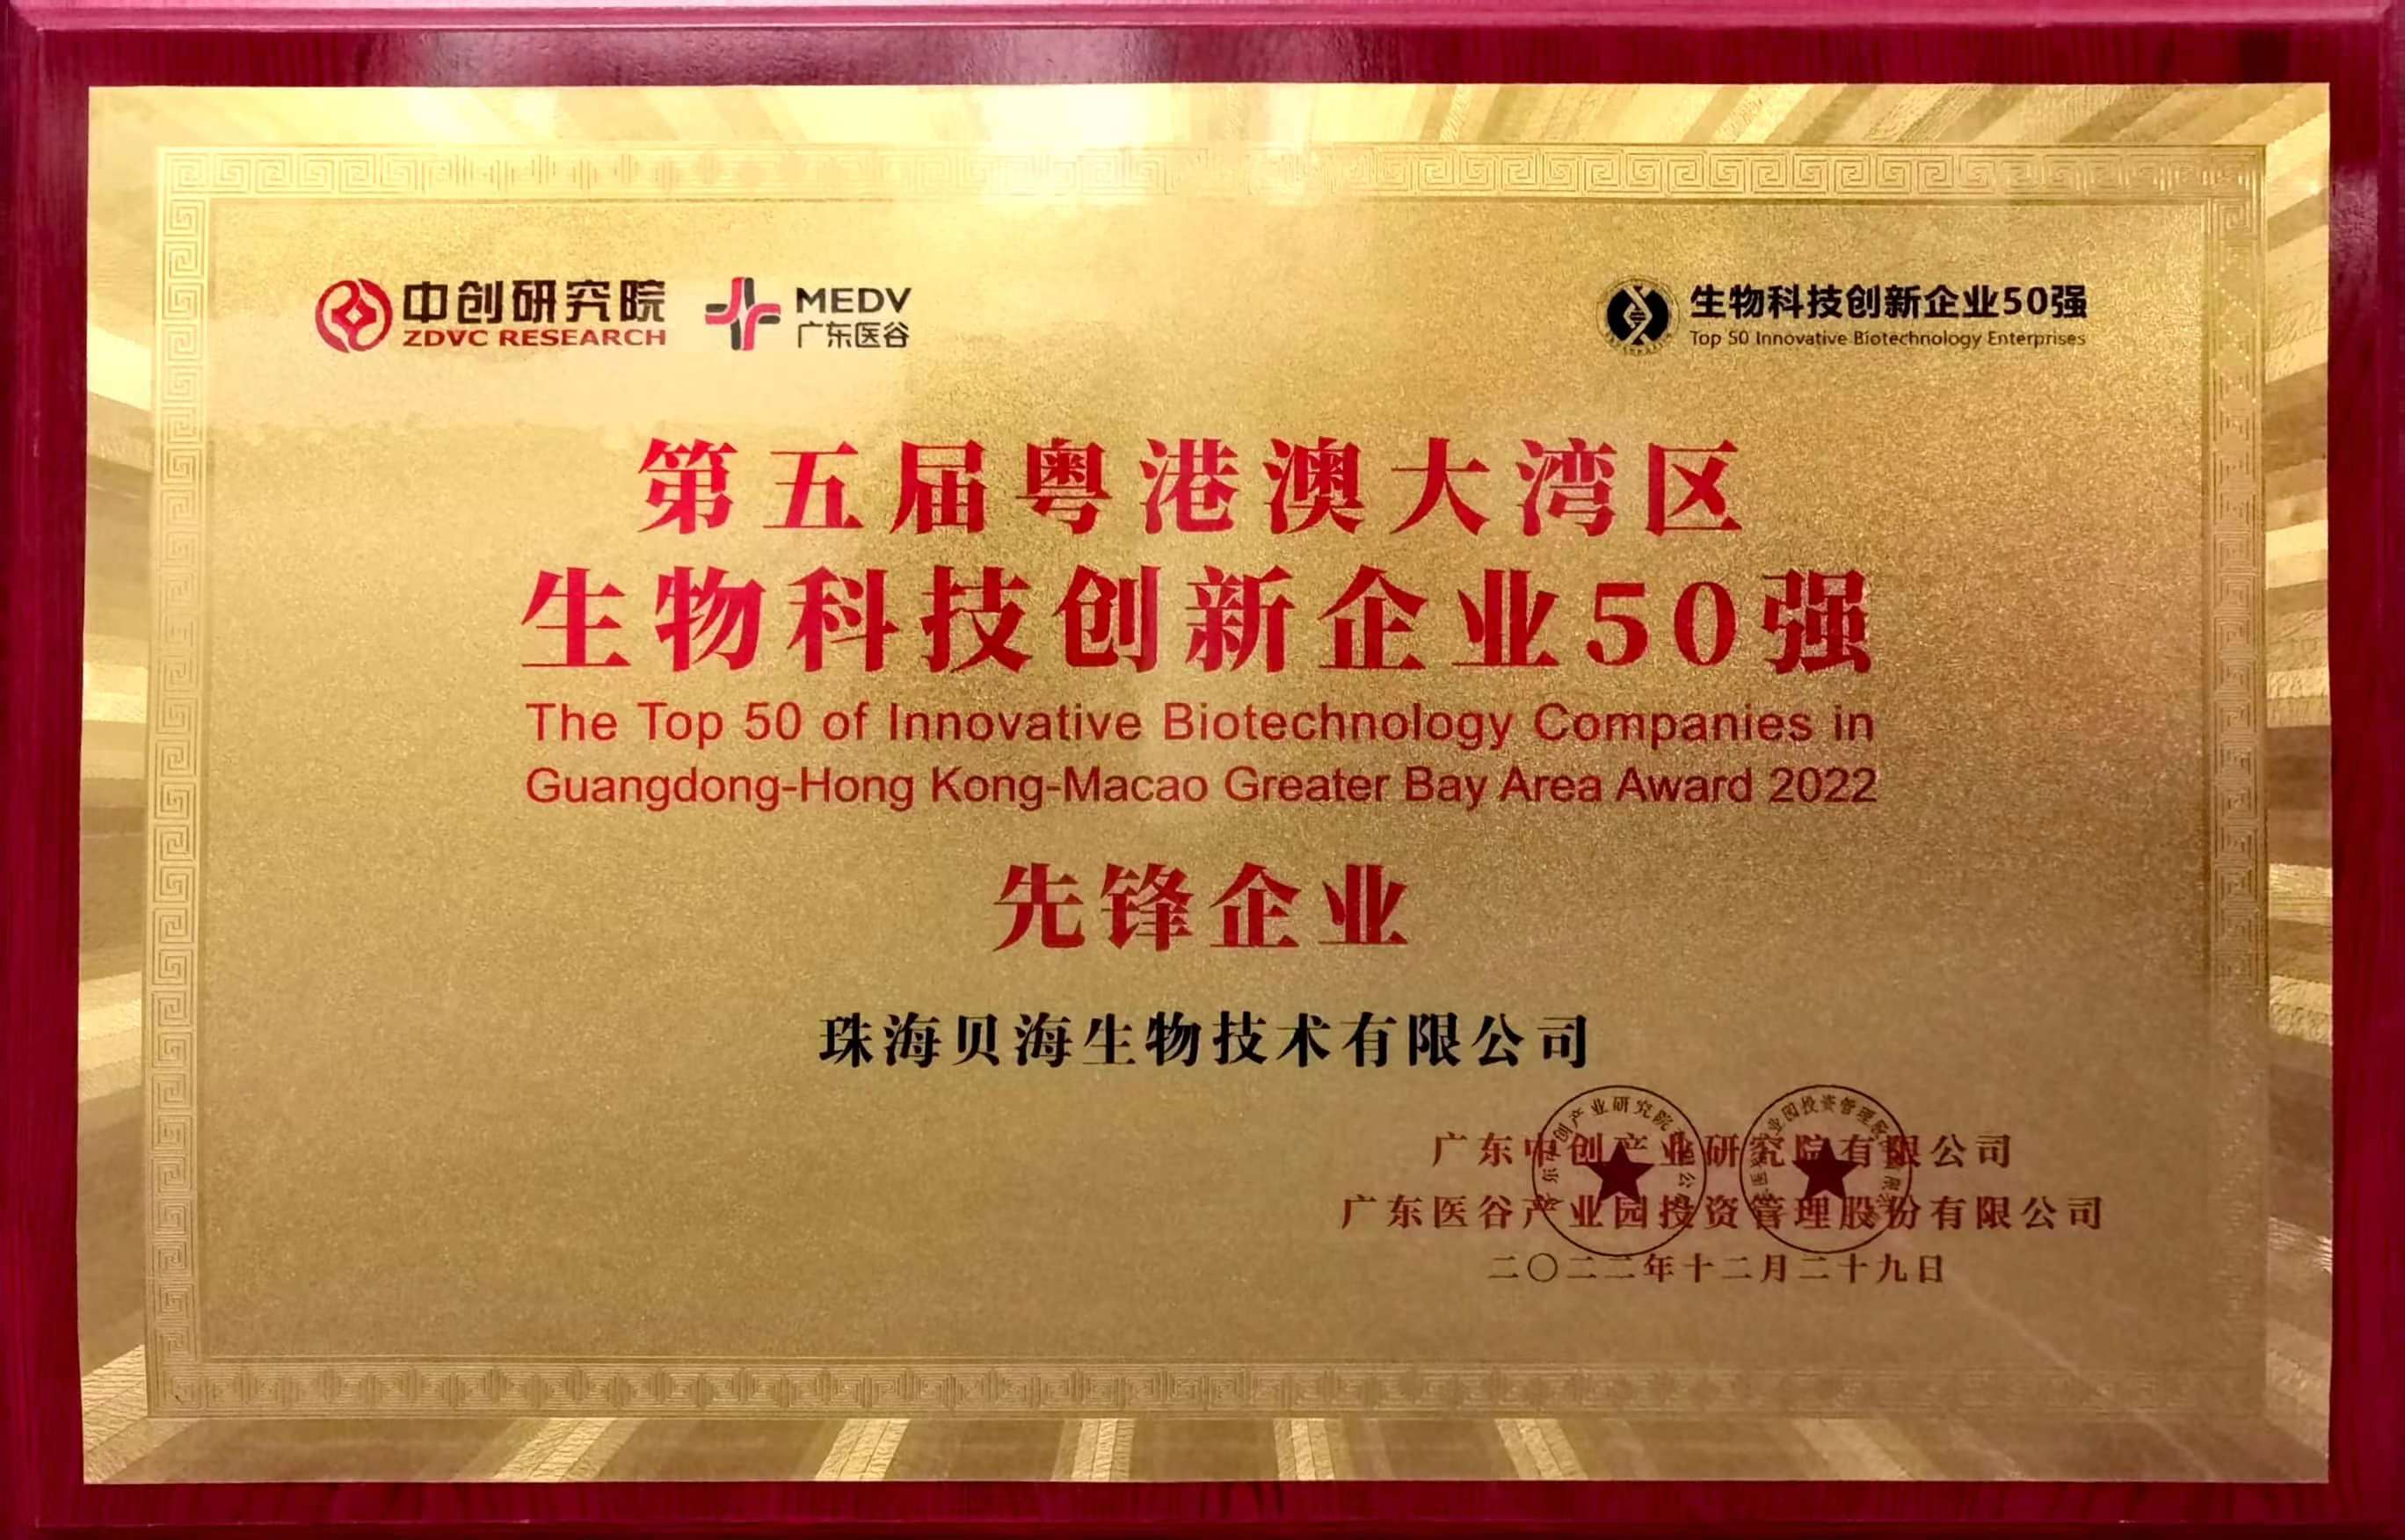 kok电子竞技(中国)有限公司官网被评为第五届粤港澳大湾区生物科技创新企业50强“先锋企业”